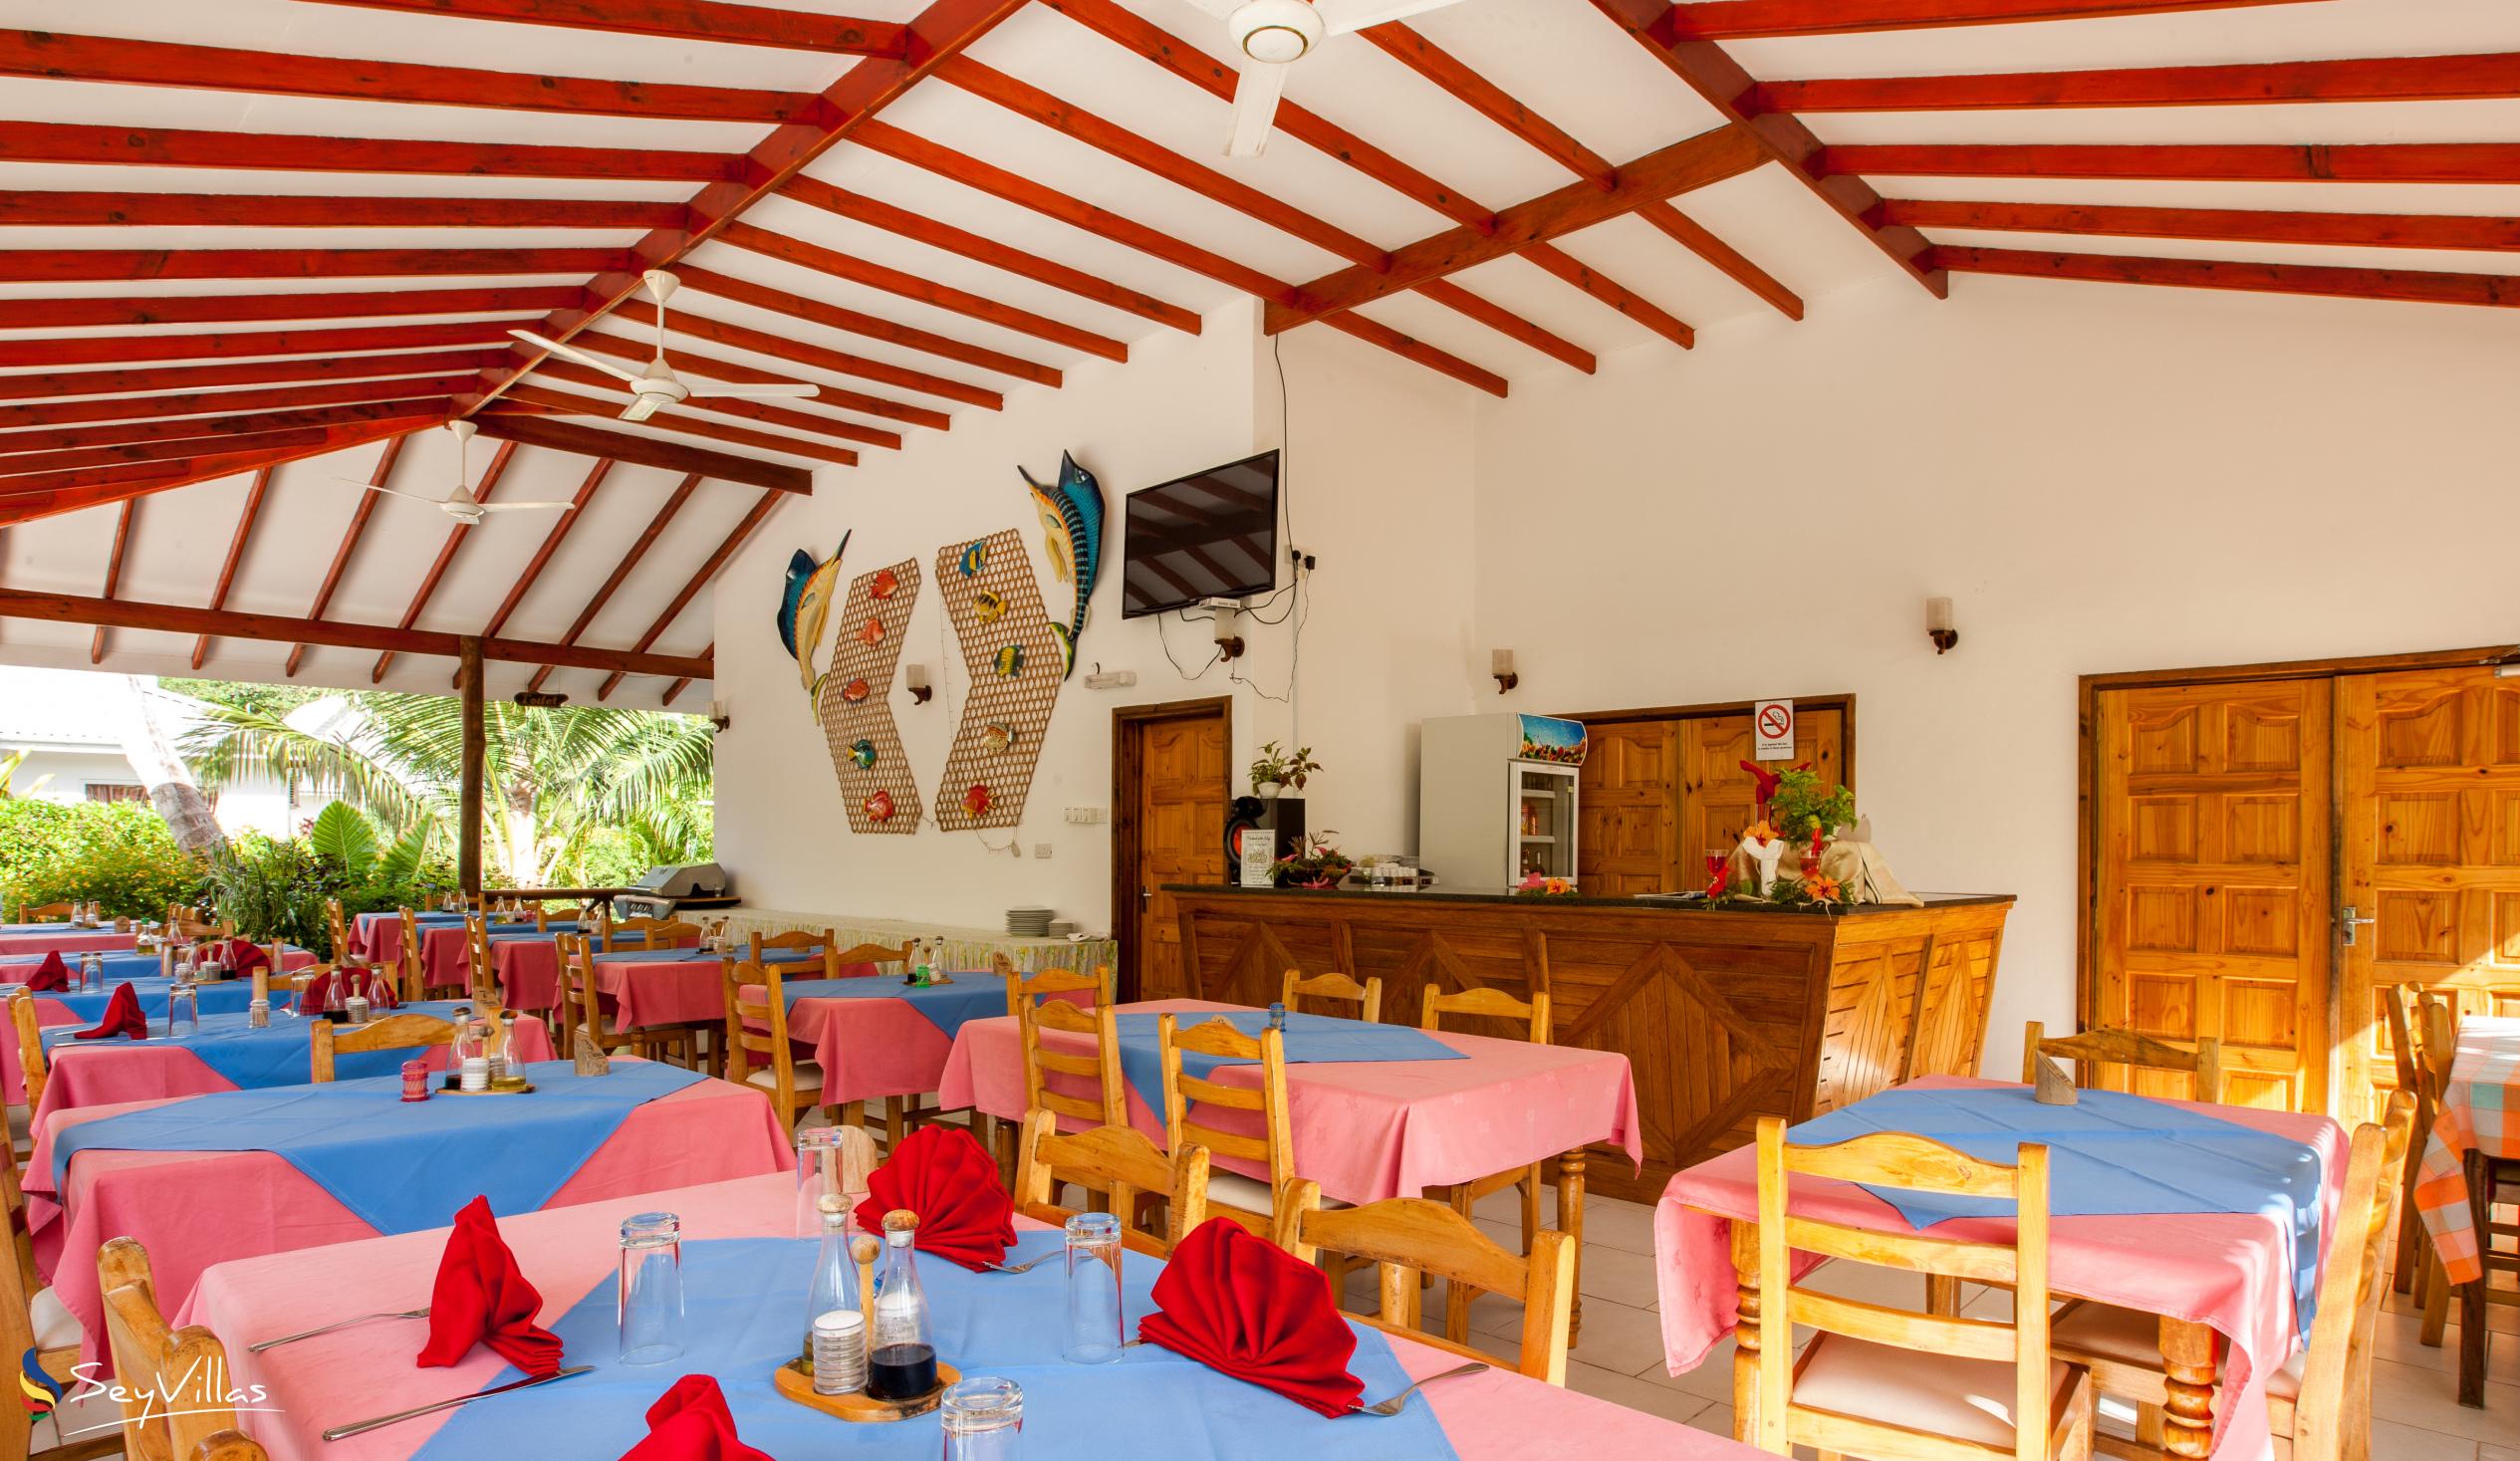 Foto 24: Villa Veuve - Innenbereich - La Digue (Seychellen)